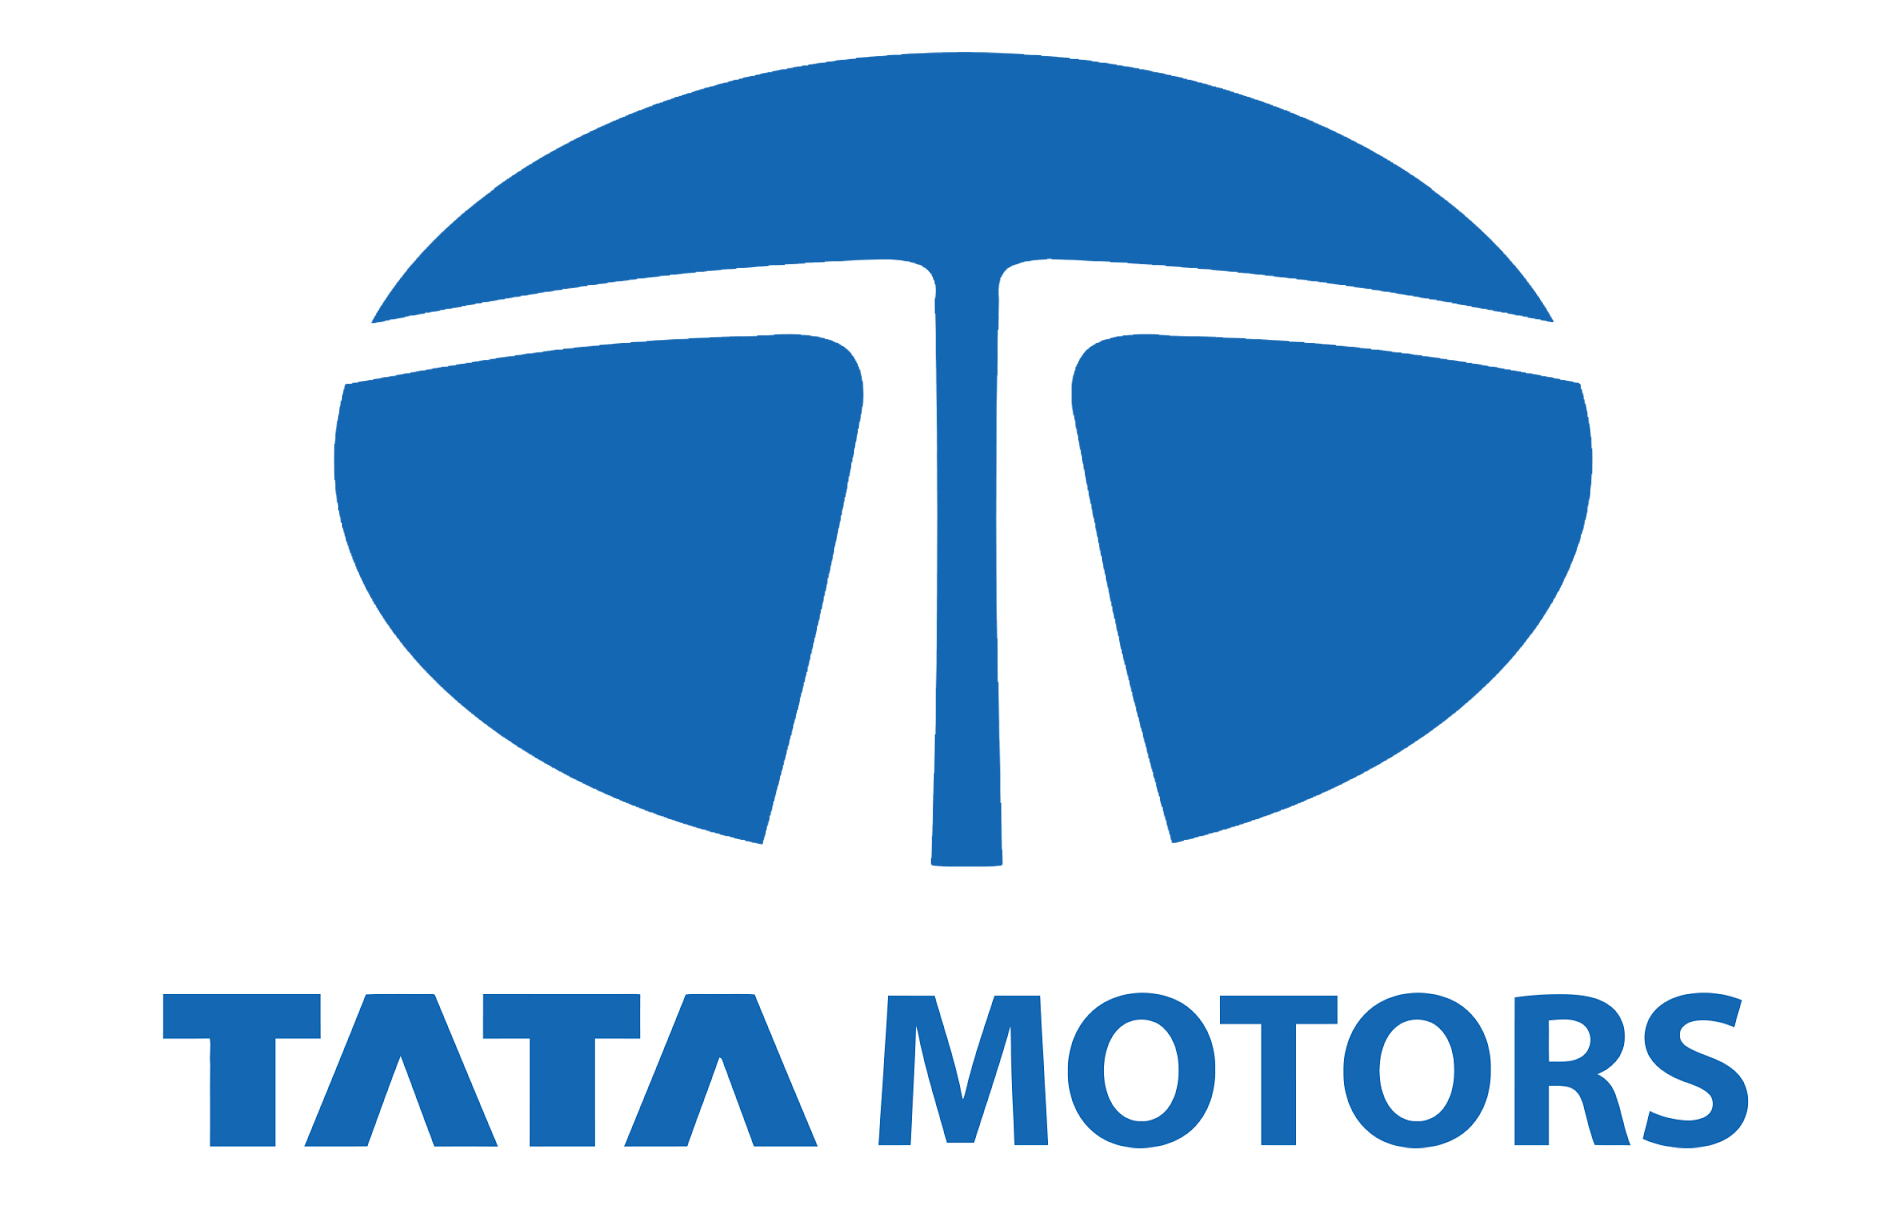 Tata Motors Cars Showroom - RR Automobiles|Show Room|Automotive